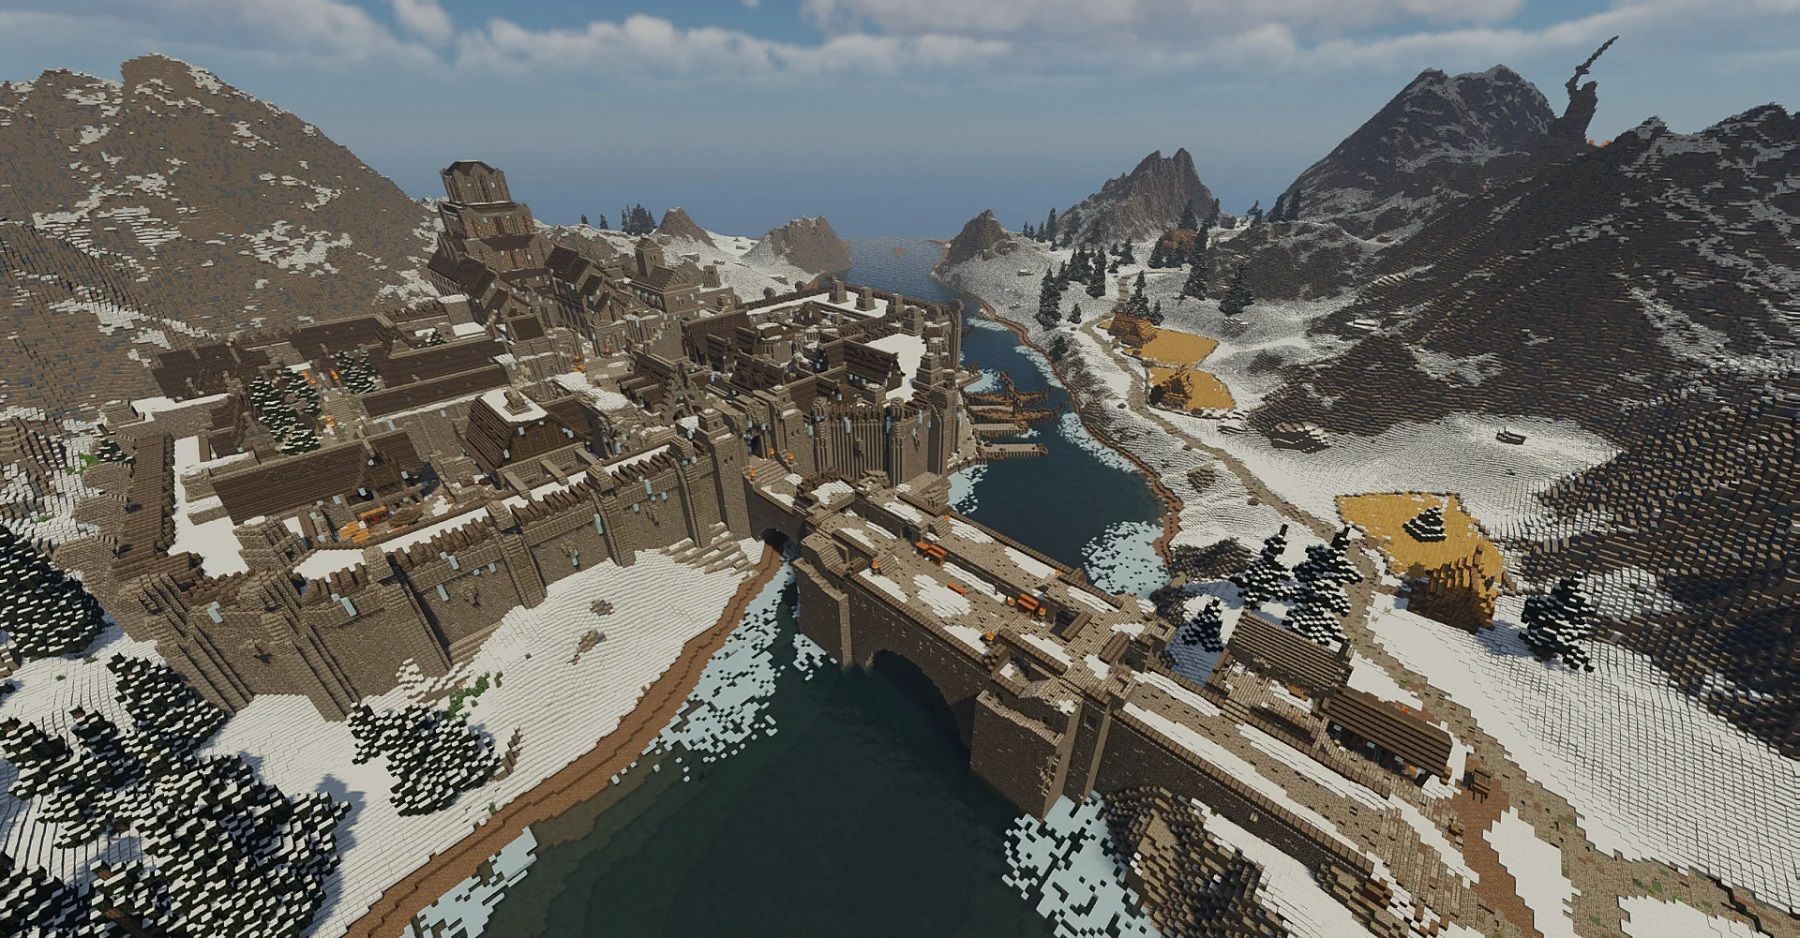 Capture d'écran de Minecraft montrant une photo grand angle d'une reconstitution de la ville de Skyrim, Windhelm.